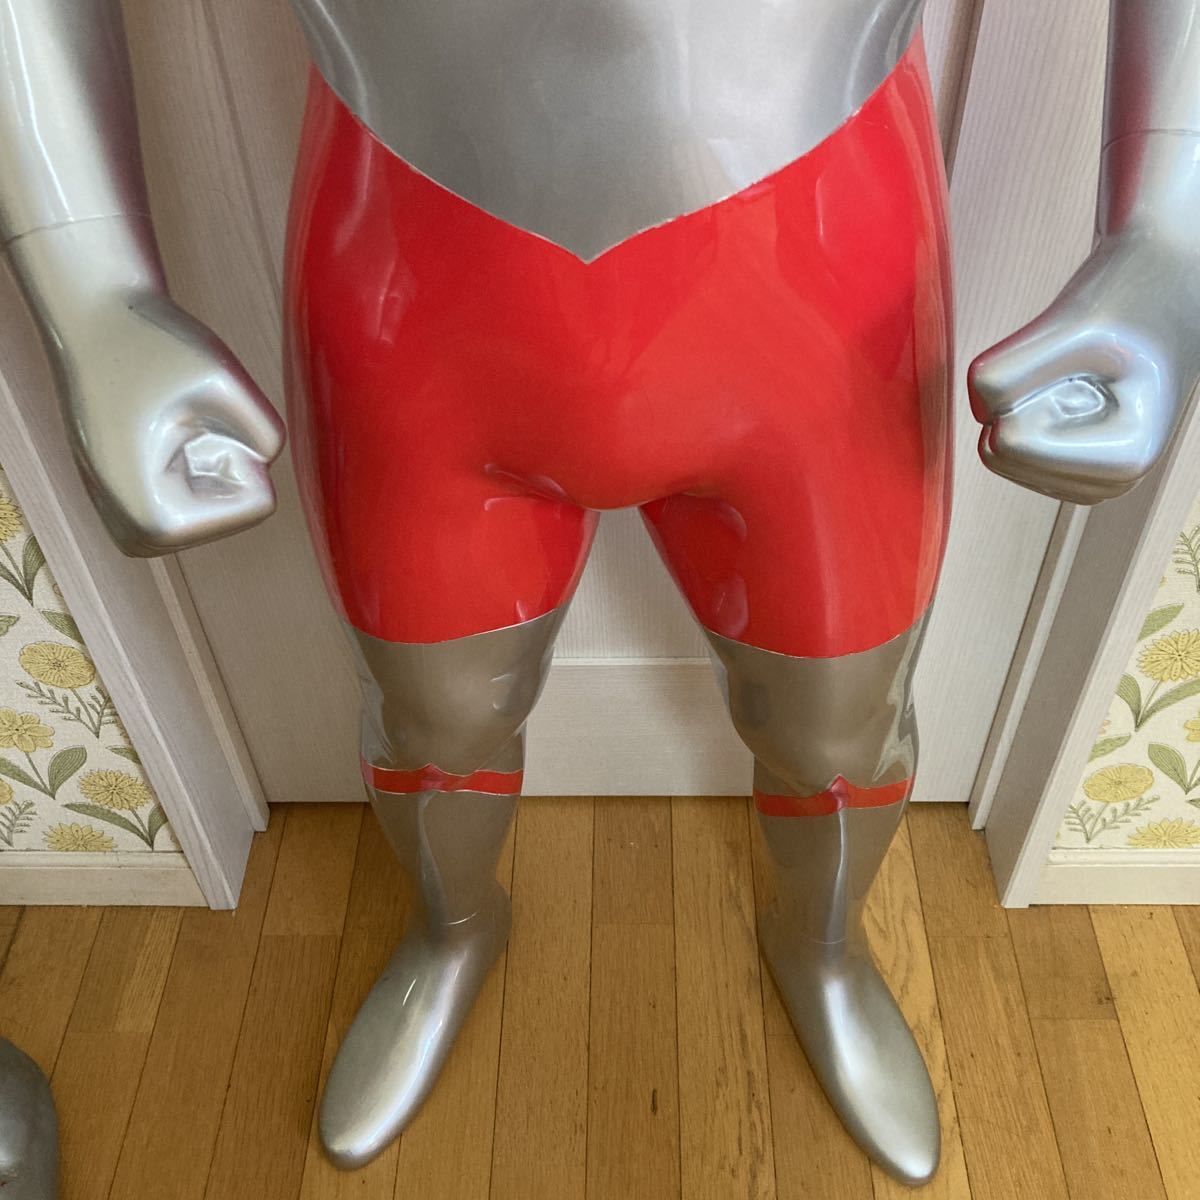  Ultraman большой размер фигурка высота примерно 150cm в натуральную величину ... большой мощности фигурка 